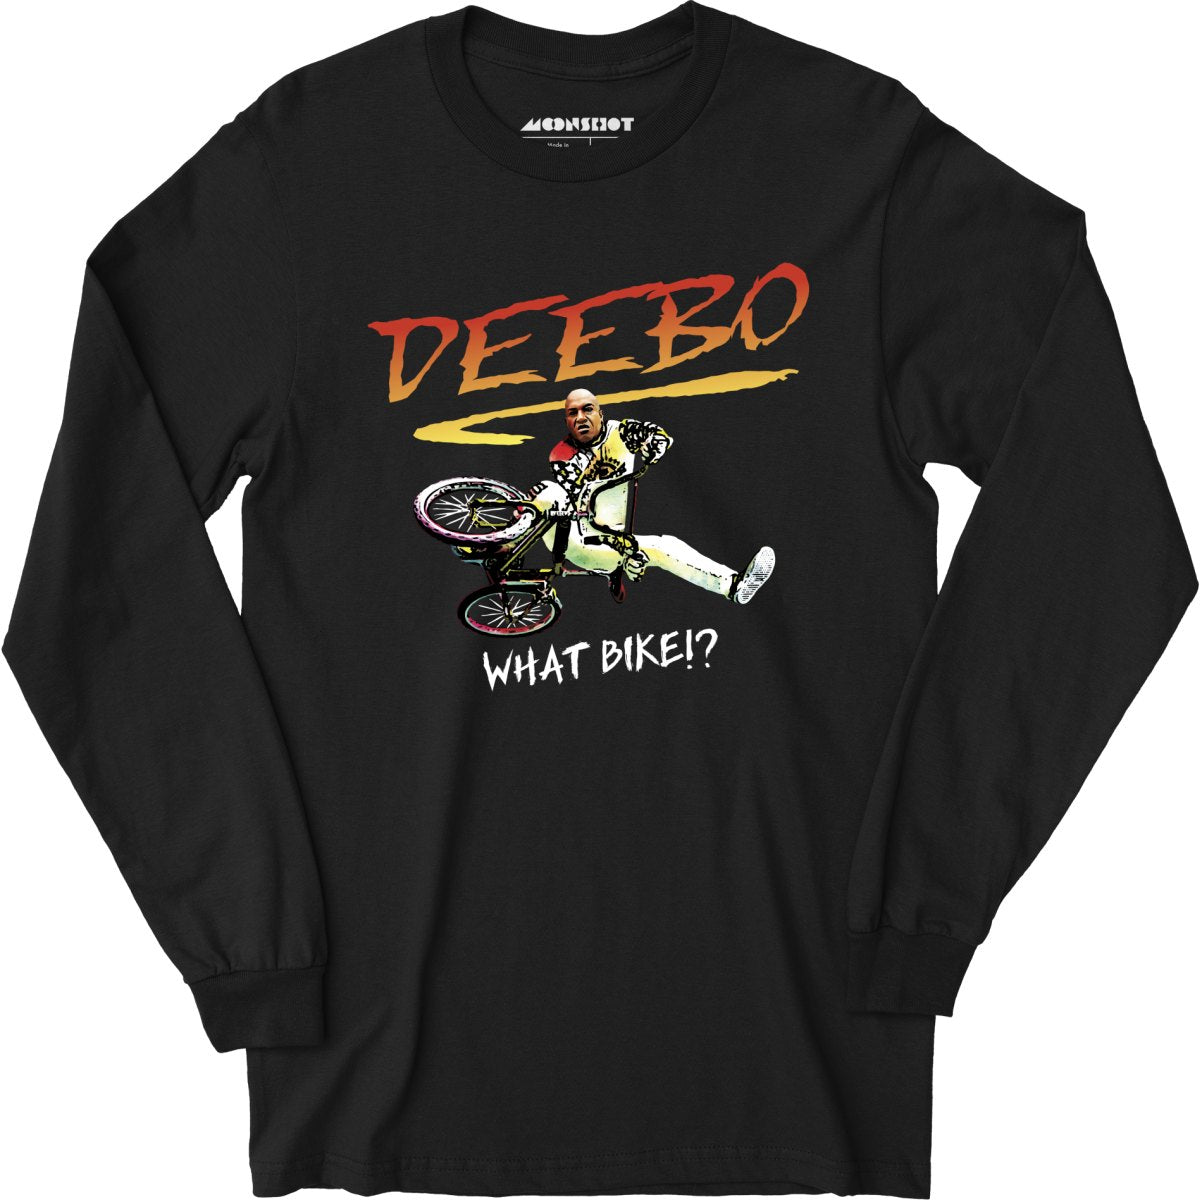 Deebo Rad BMX Bike Parody Mashup - Long Sleeve T-Shirt